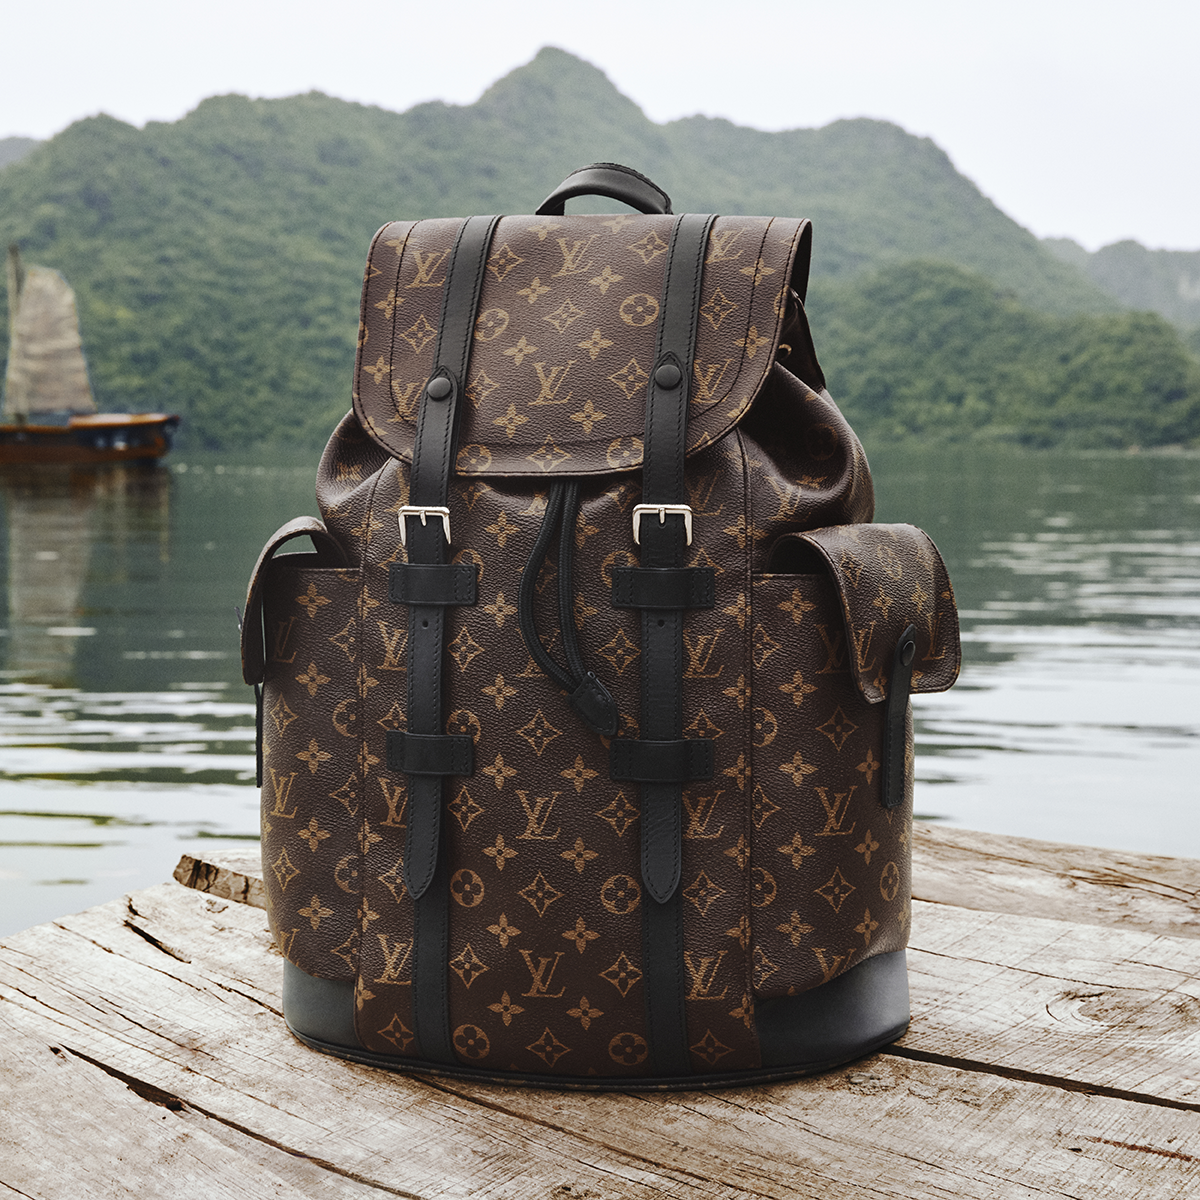 Lluvioso rueda instinto Una maleta de Louis Vuitton perfecta para cada tipo de viajero | Moda y  caprichos